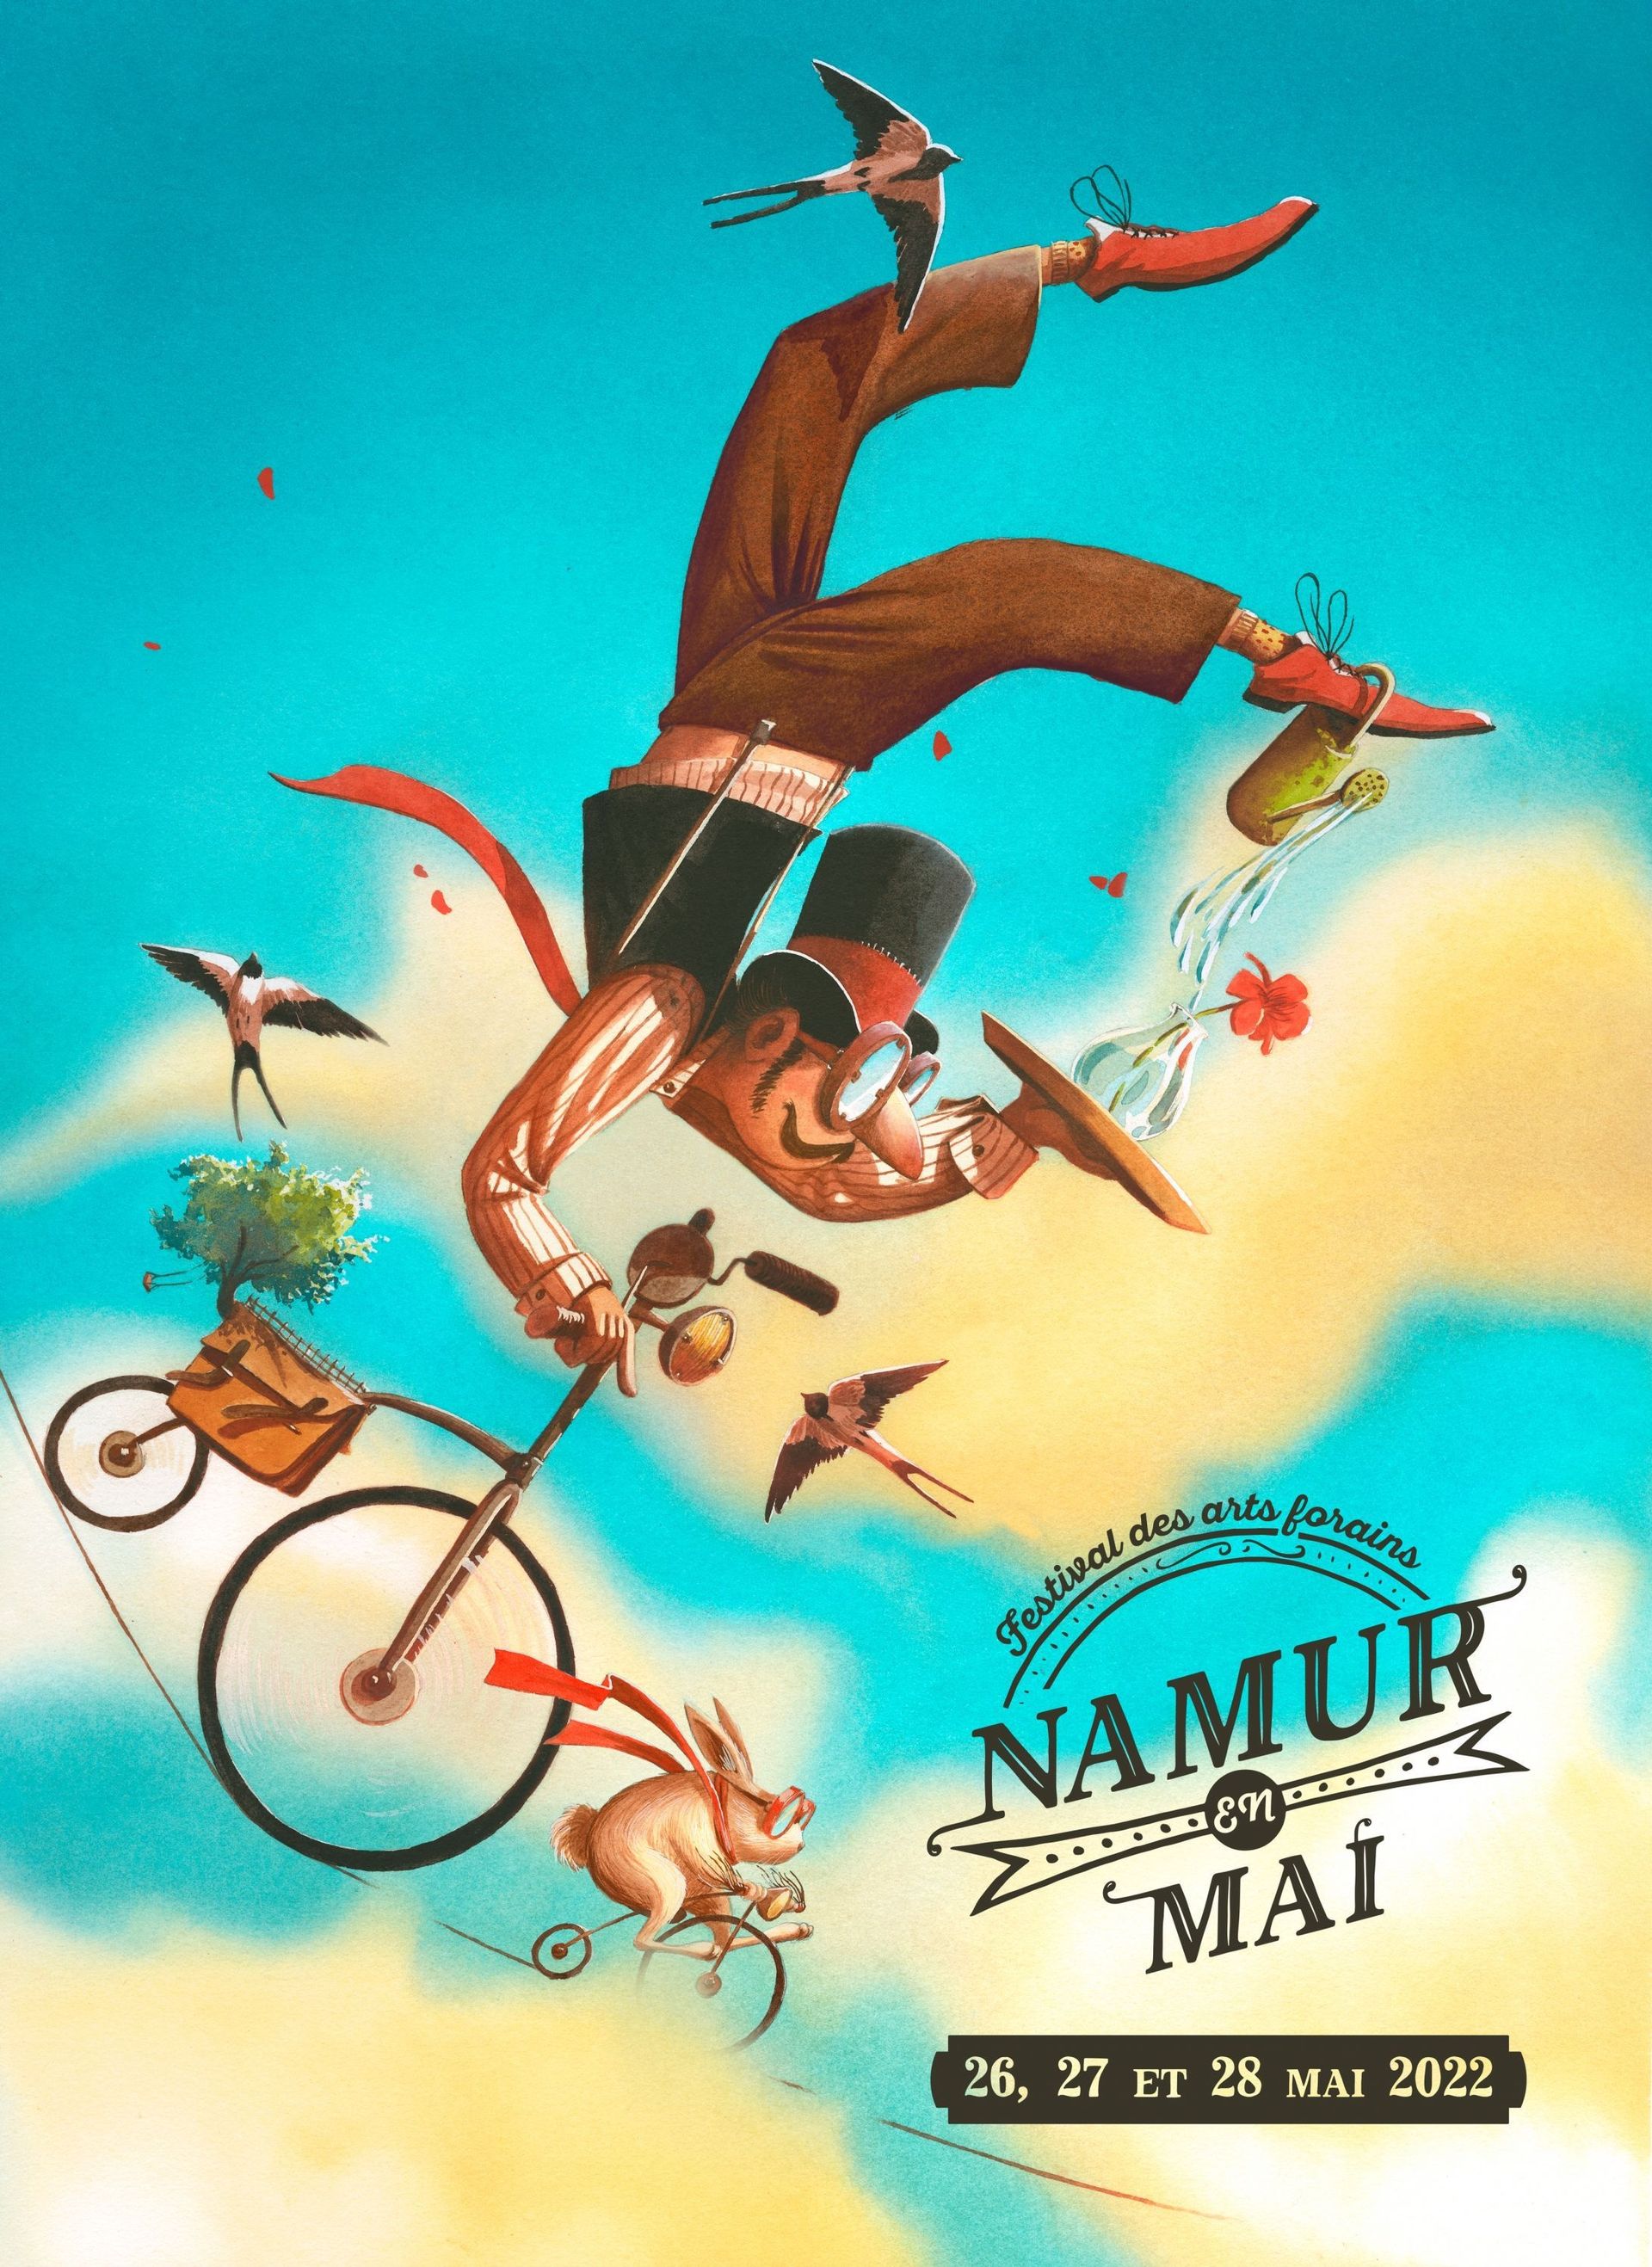 Affiche de l’édition 2022 de Namur en Mai réalisée par Thibault Prugne.